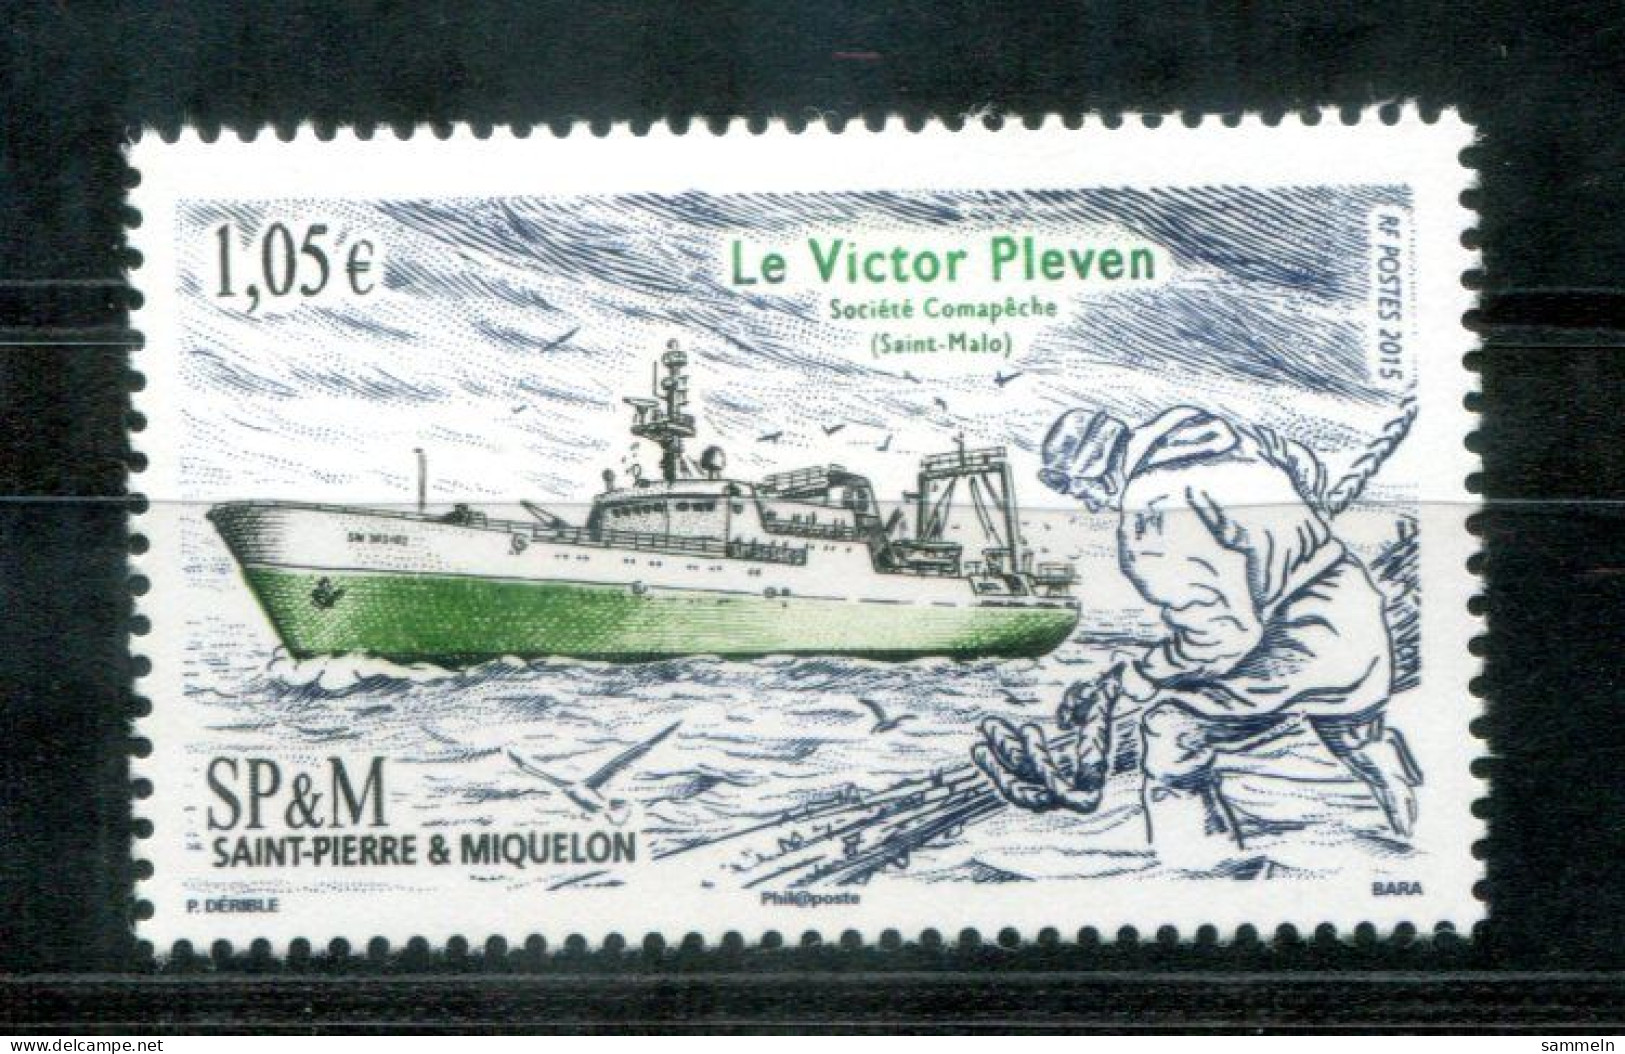 SAINT PIERRE & MIQUELON 1220 Mnh - Fischerei, Fishing, Pêche, Schiff, Ship, Bateau - Unused Stamps